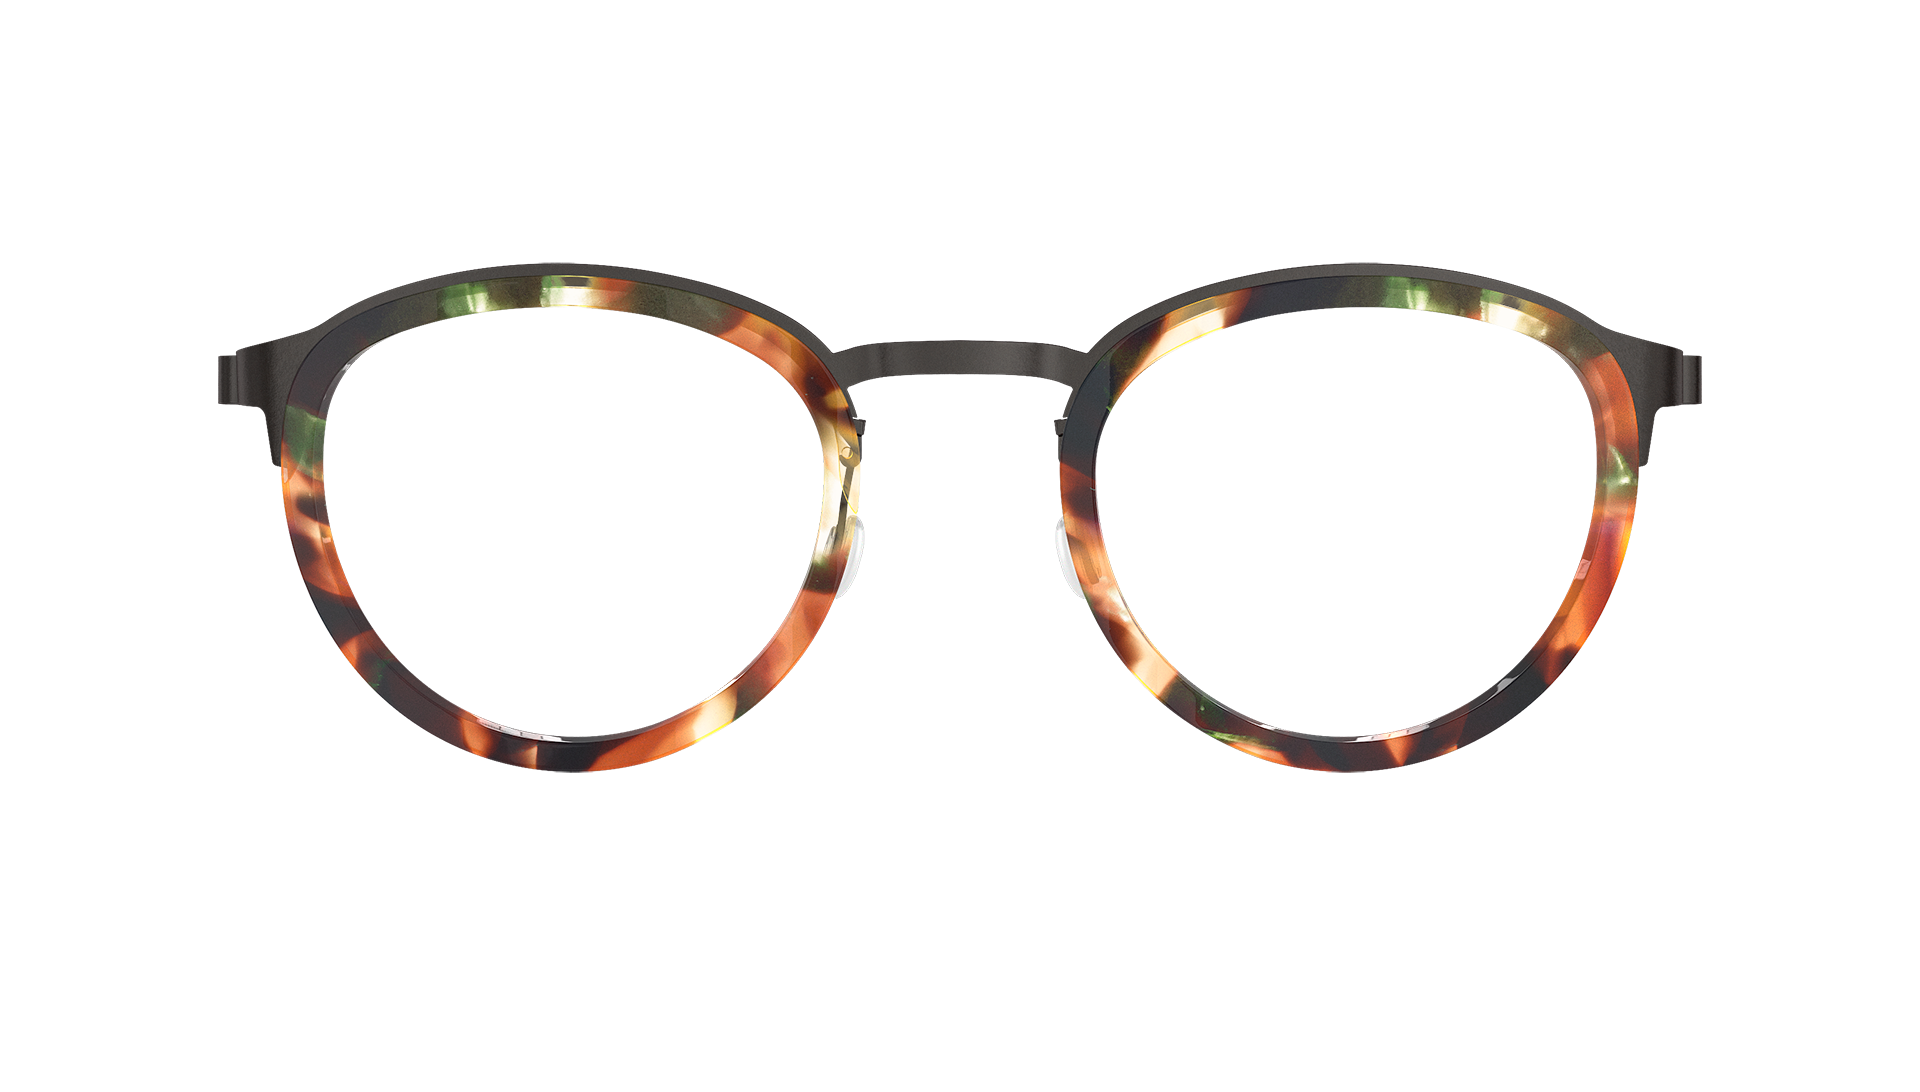 LINDBERG mof Model 4509 K261 tortoise framed glasses with interchangeable sunglass lenses